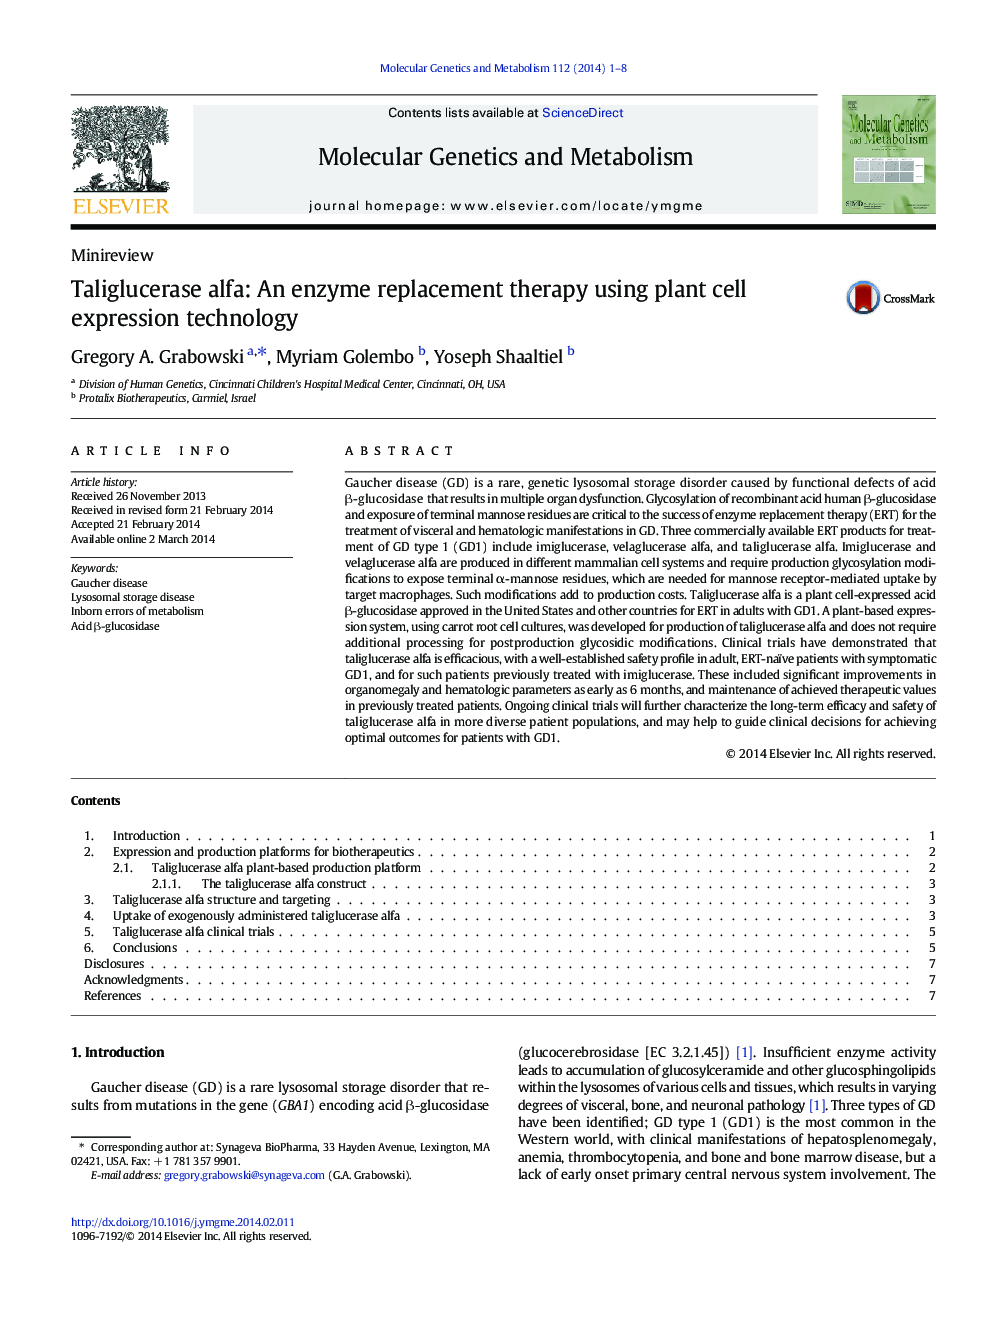 تالیگلوسراز آلفا: یک جایگزین آنزیمی با استفاده از فناوری بیان سلول های گیاهی 